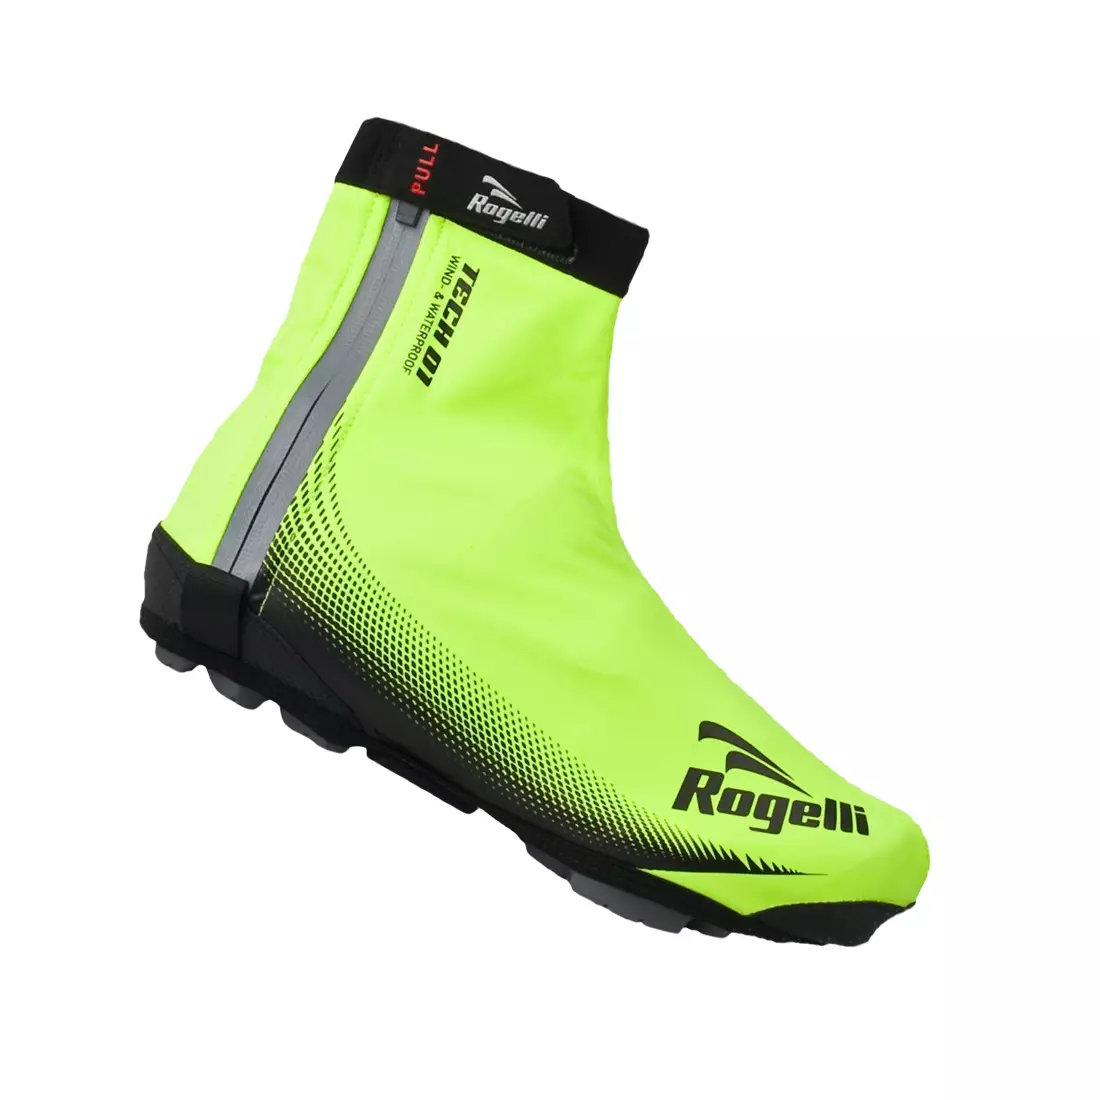 ROGELLI FIANDREX - protektorok kerékpáros cipőhöz, szín: Fluor